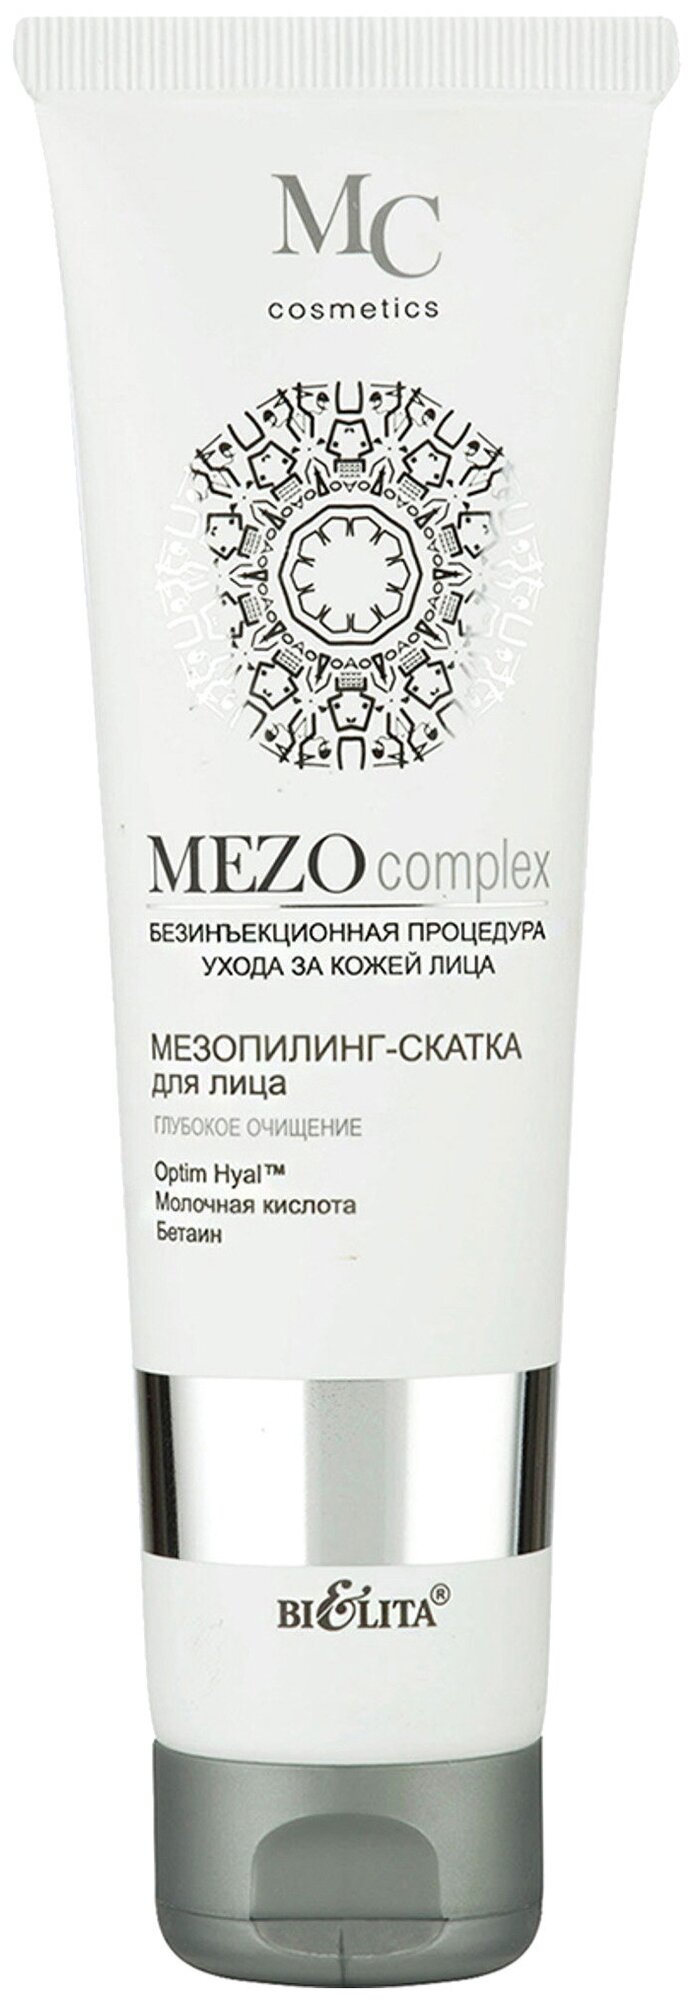 MEZOcomplex пилинг-скатка д/лица Глубокое очищение 100мл.*20 (1405)